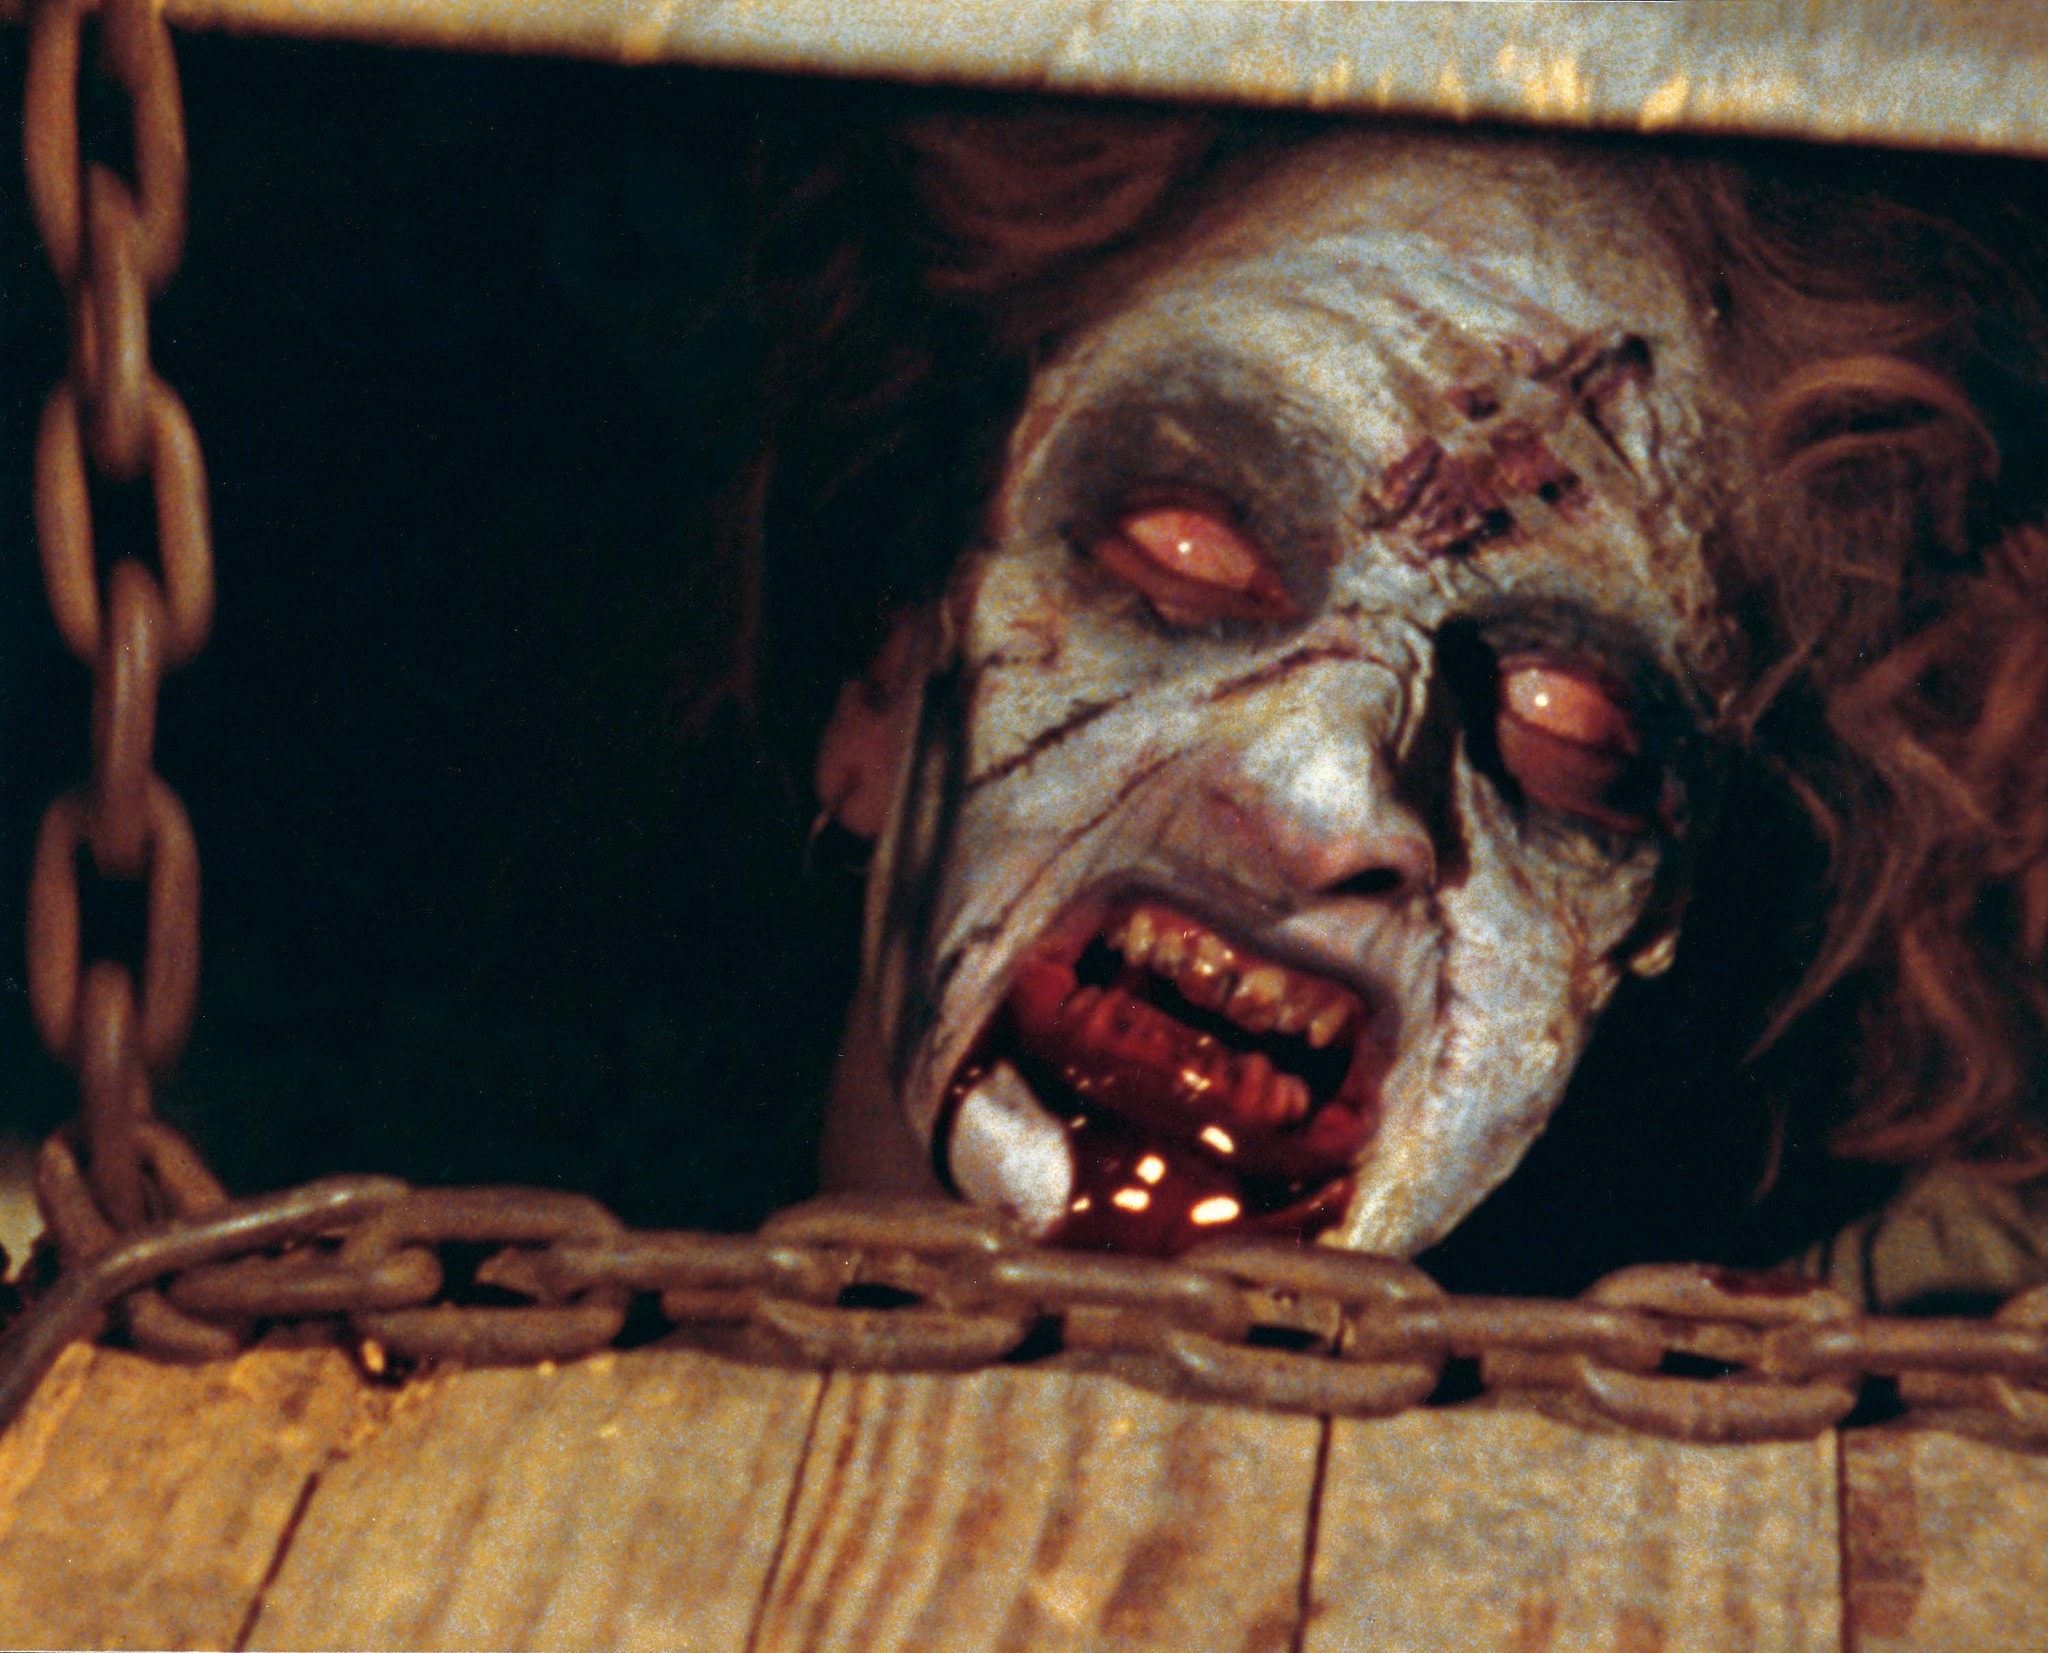 Scriptshadow Spooktacular October Horror Review – The Evil Dead!